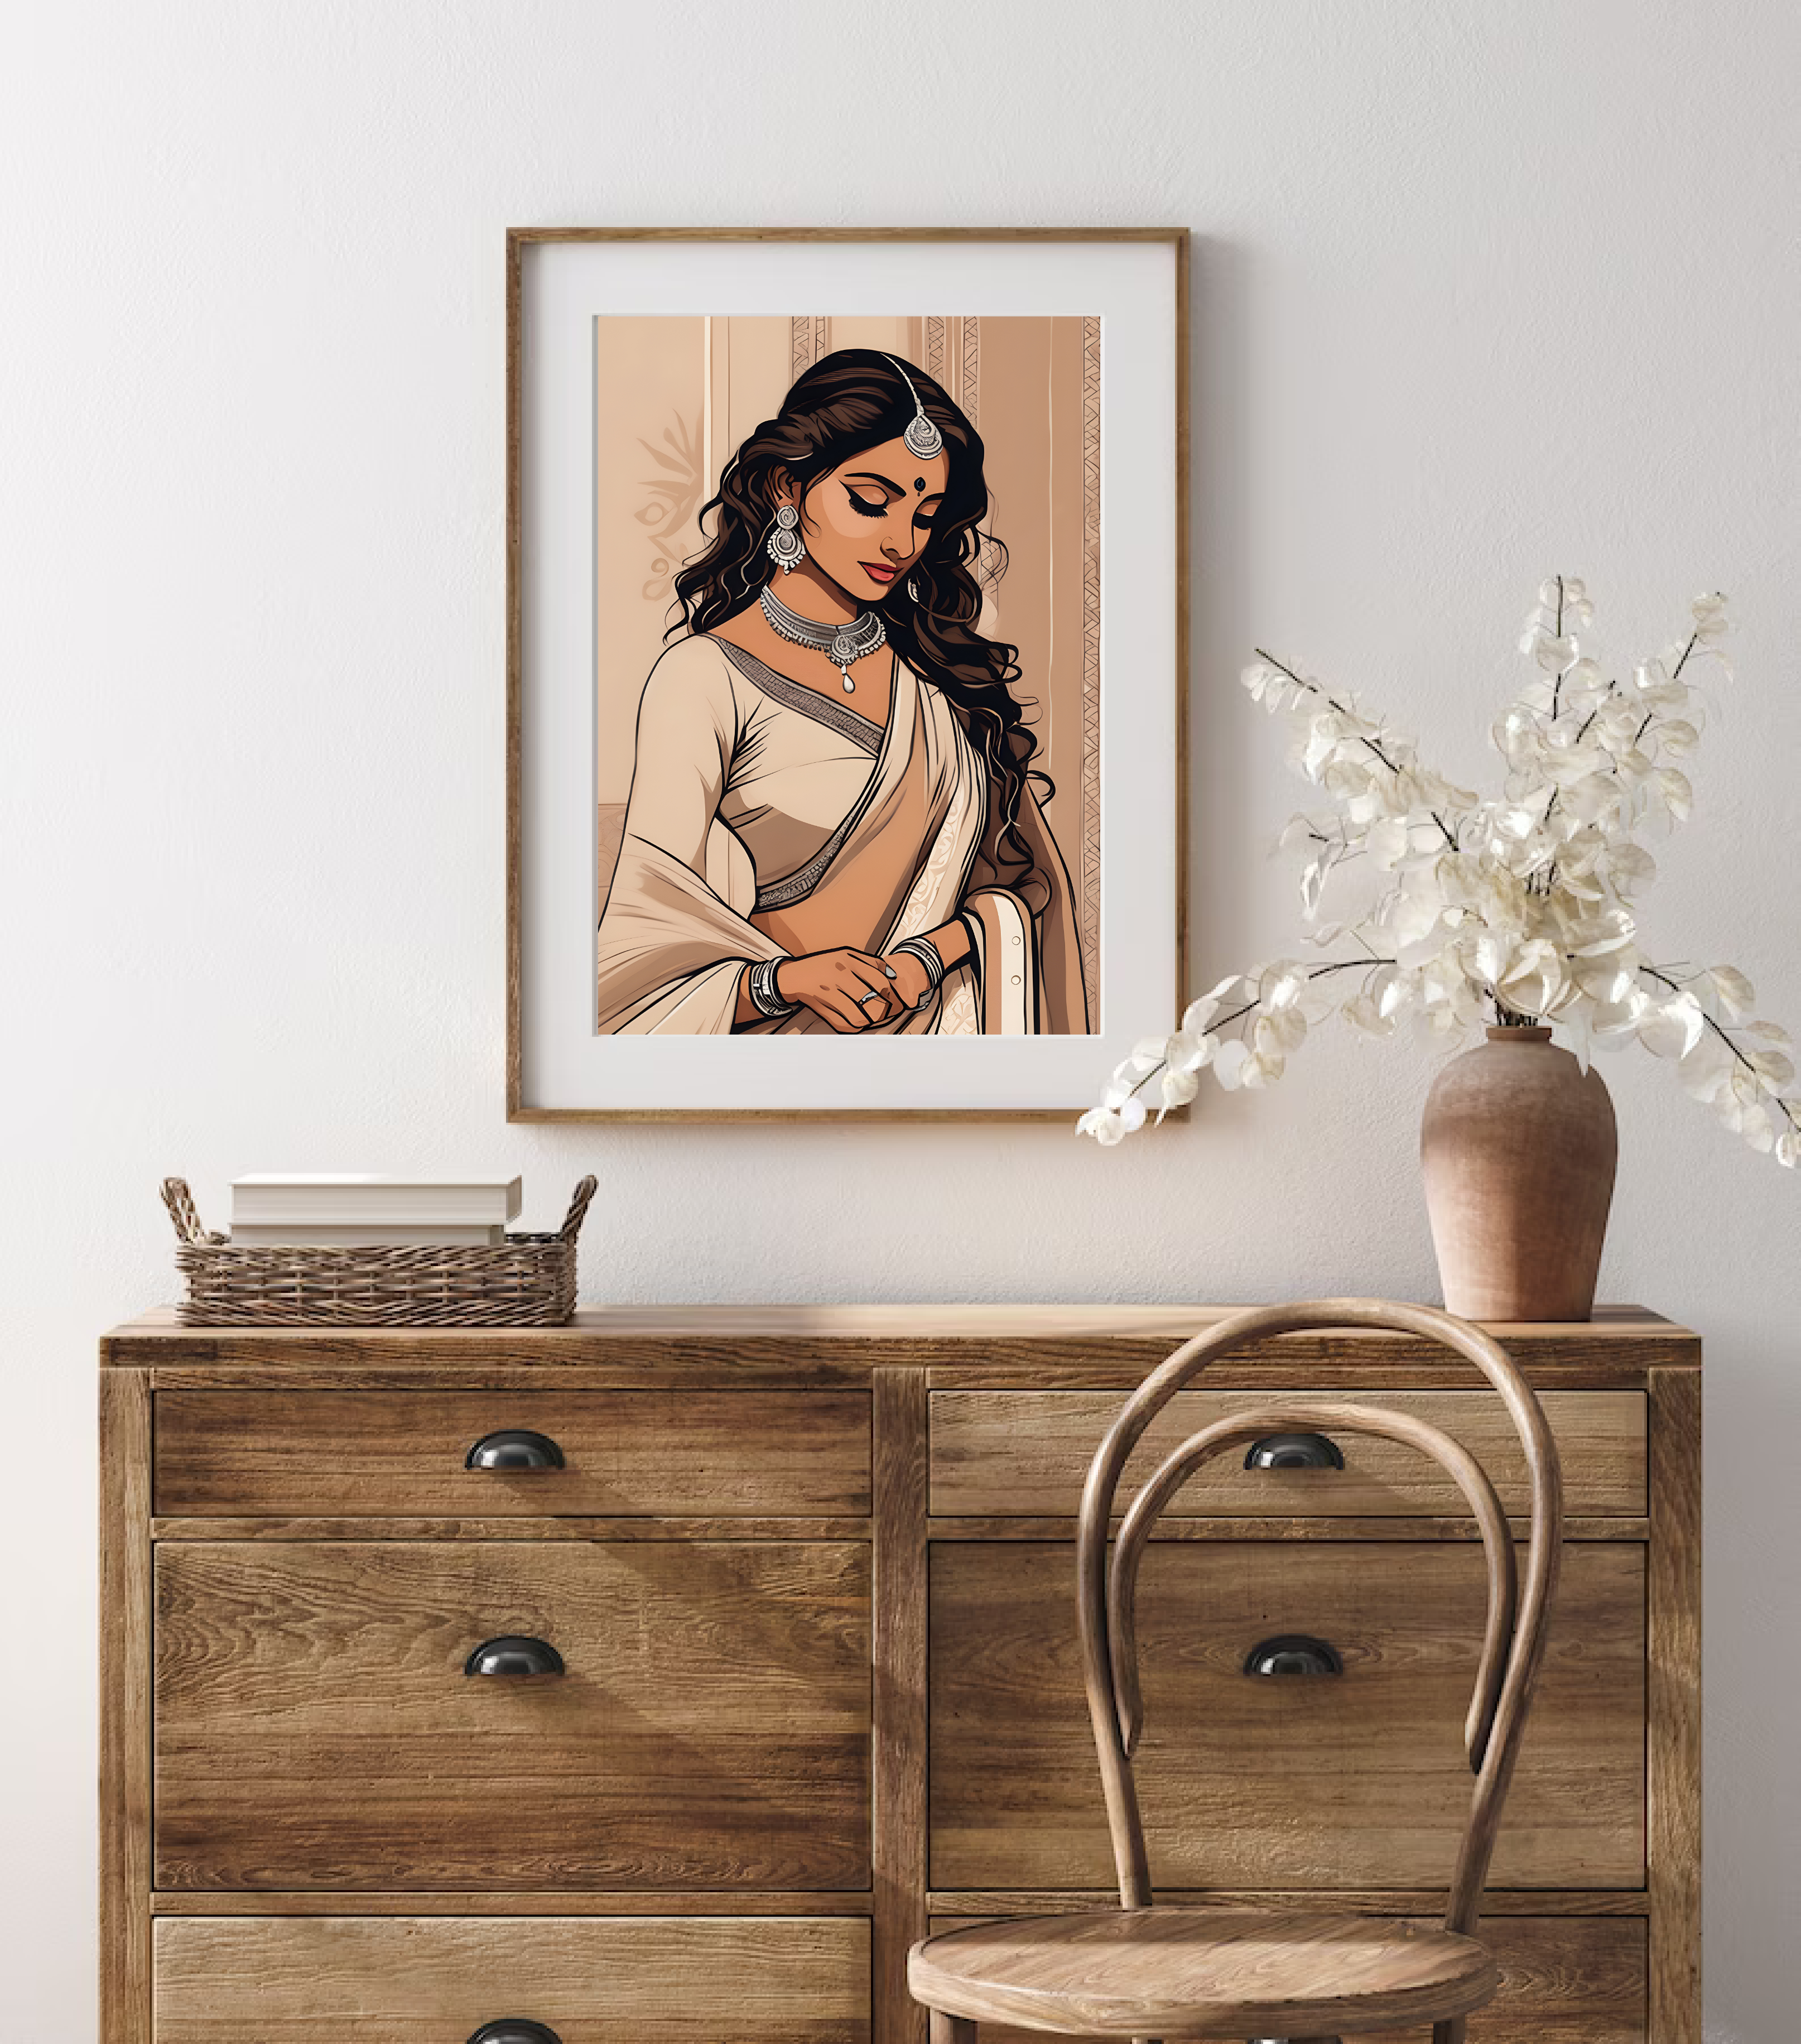 Indian Woman Art Print, Indian Art, Indian Girl Art, Indian Woman in Saree, Digital Print